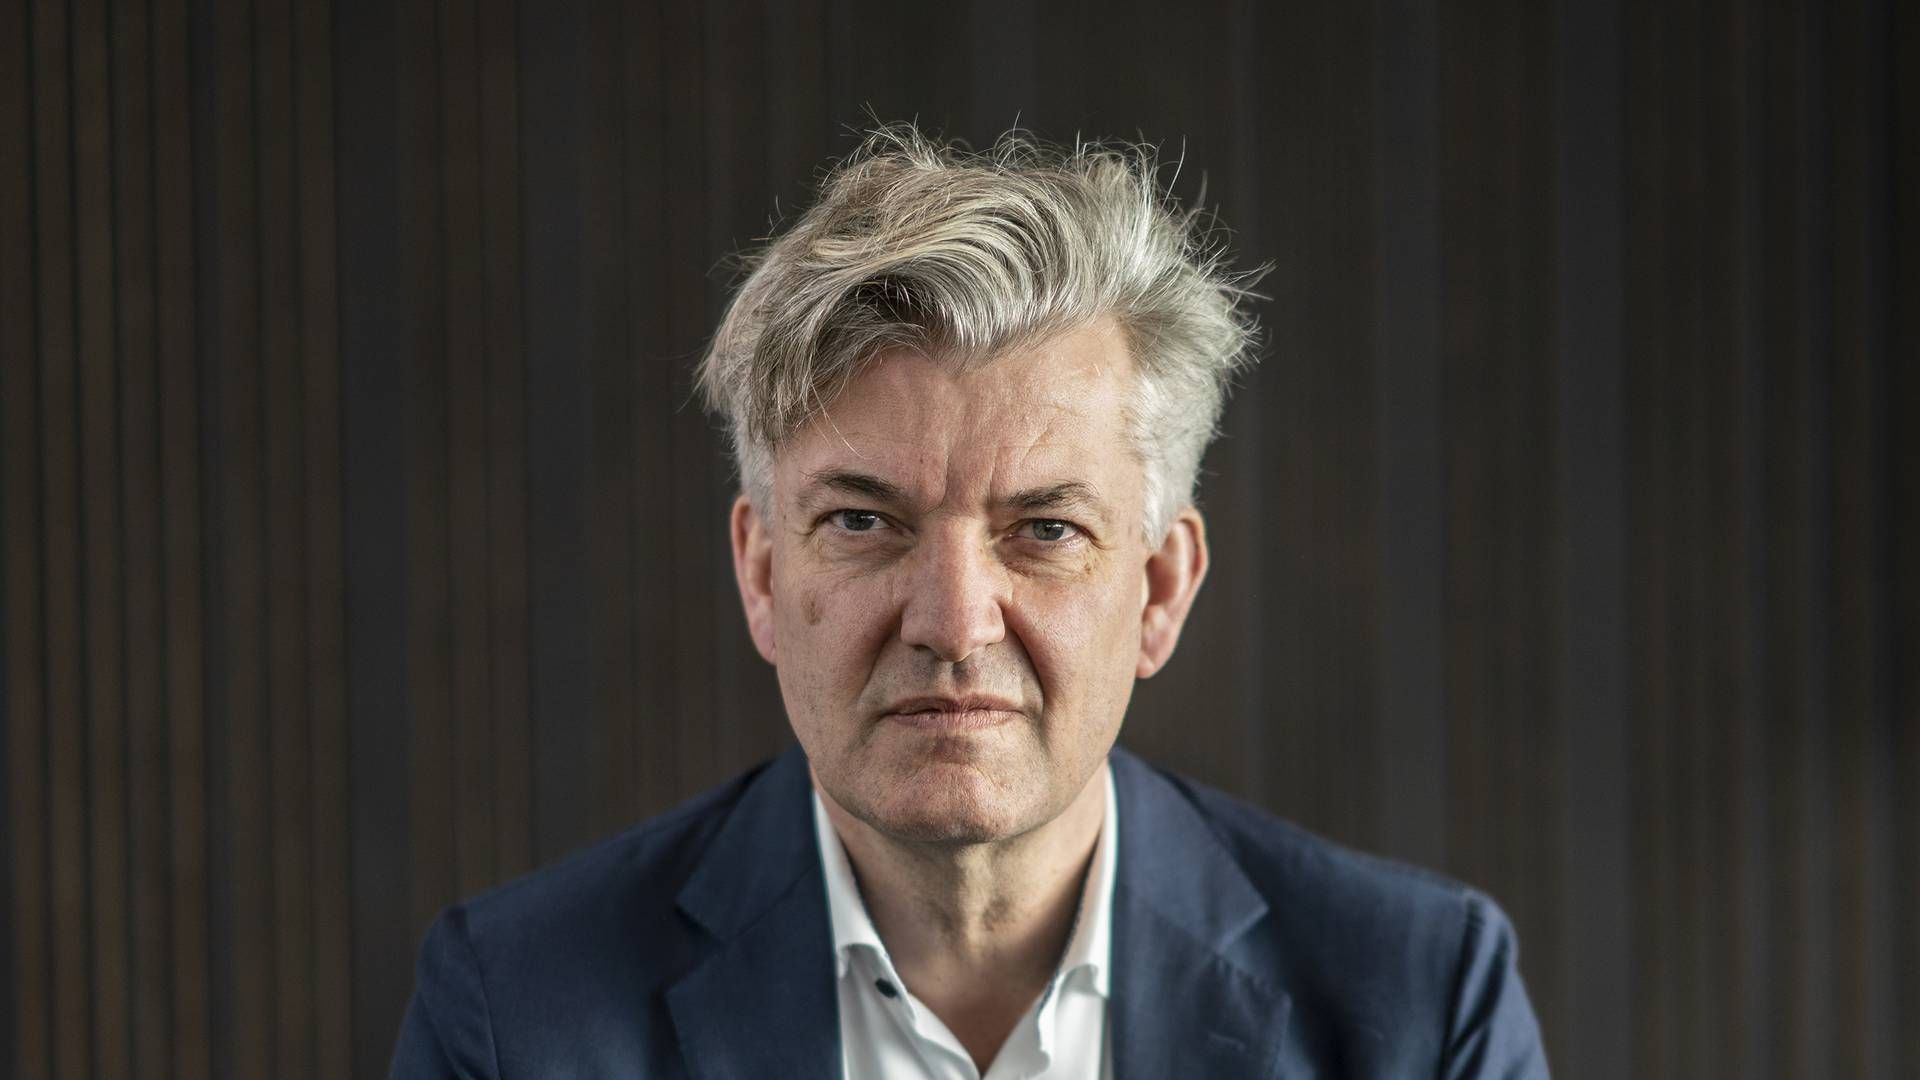 Allan Polack stoppede for nylig som adm. direktør for pensionsselskabet PFA. Nu er han valgt ind i bestyrelsen i Danske Bank. | Foto: Stine Bidstrup/ERH